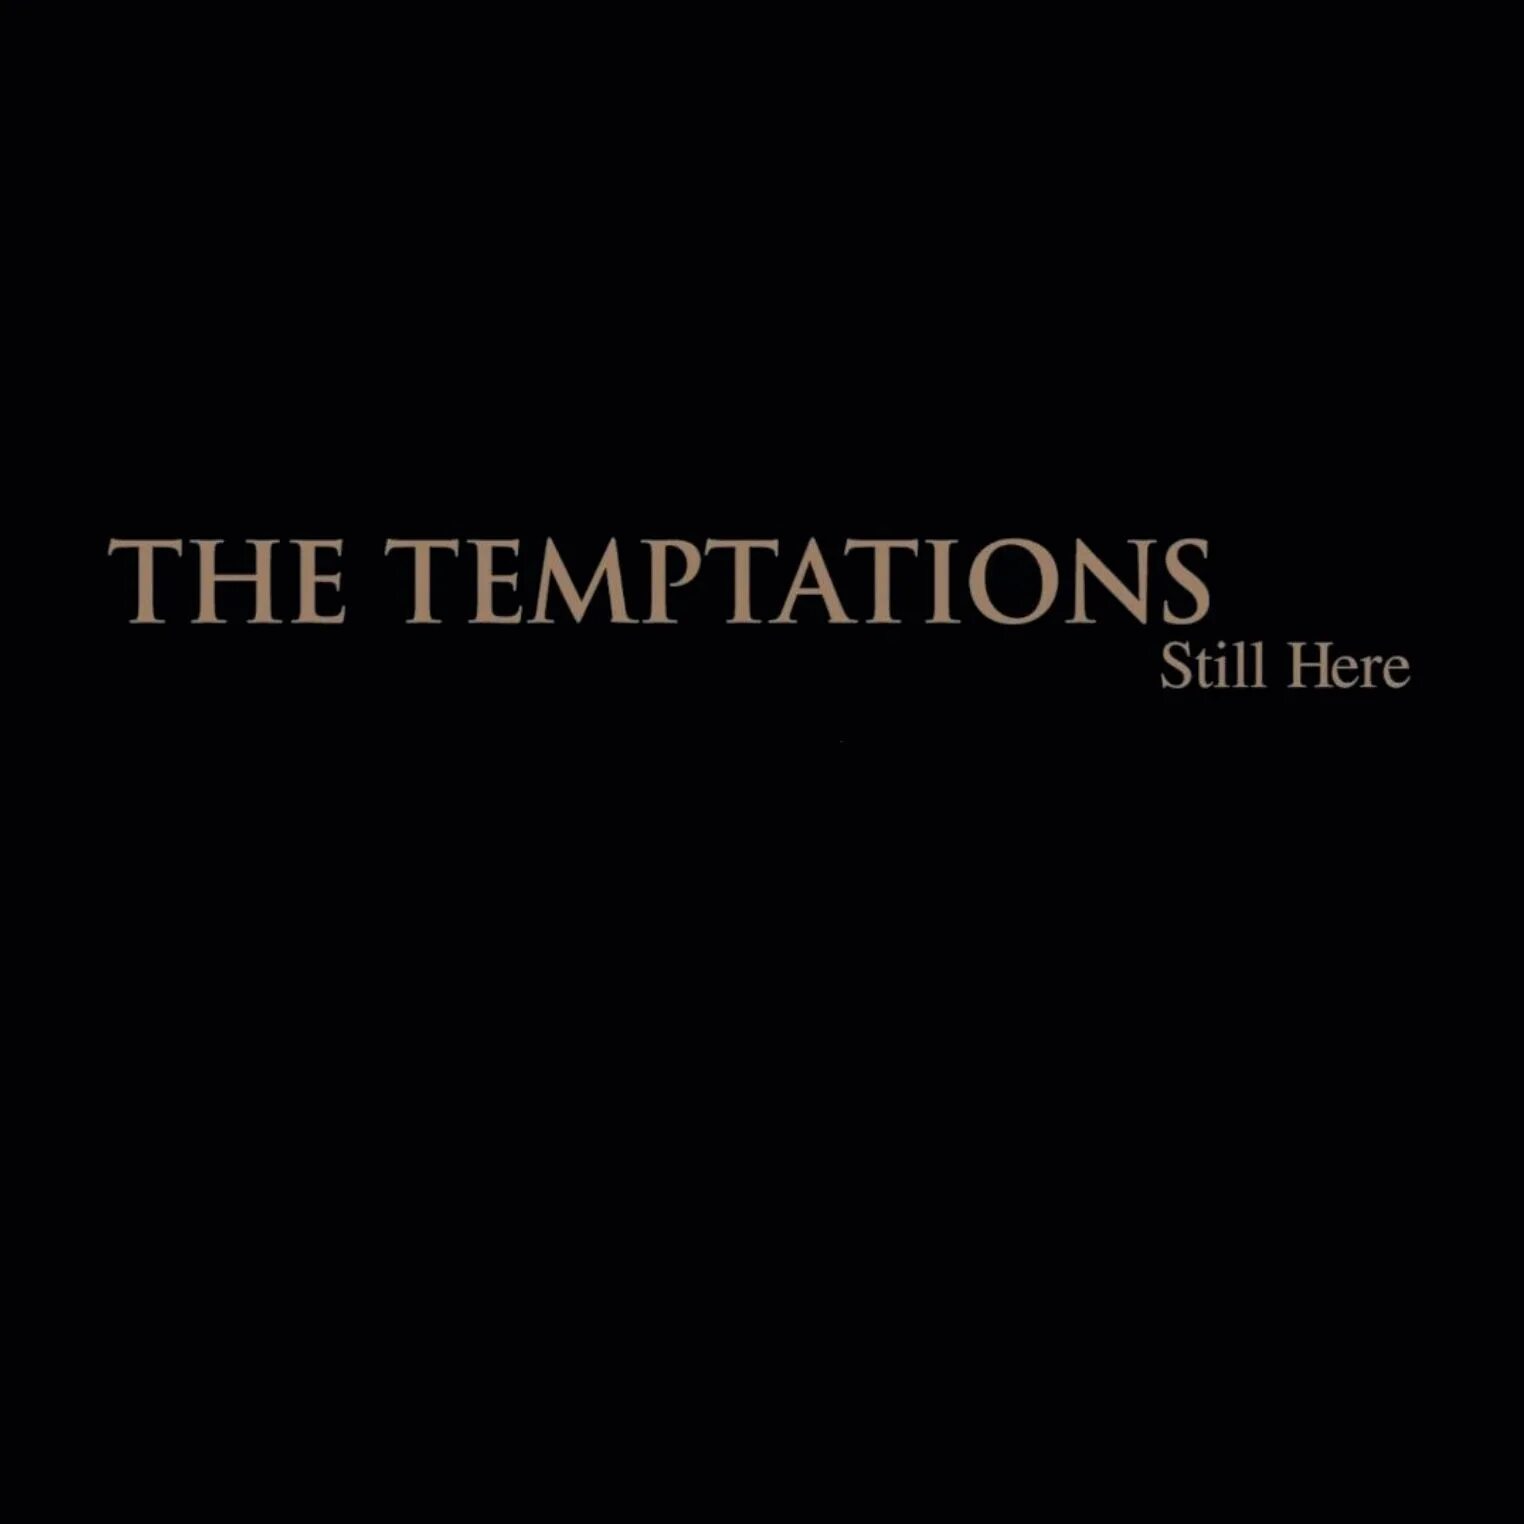 Песня here now. Still here. Temptation album. Альбом тхт Temptation. Txt Temptation альбом обложка.